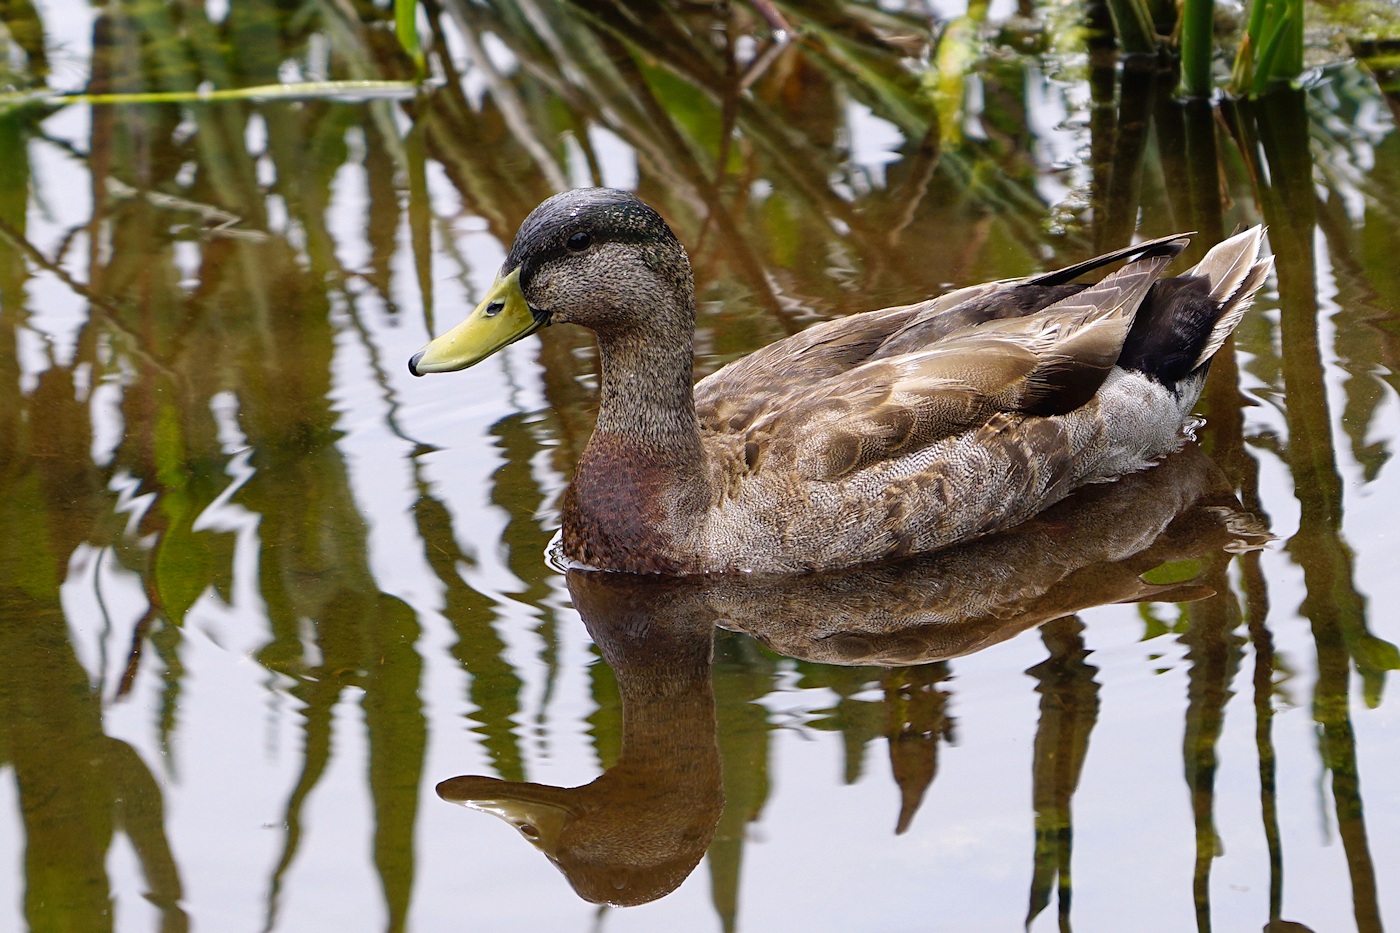 Hybrid mottled duck / mallard duck offspring